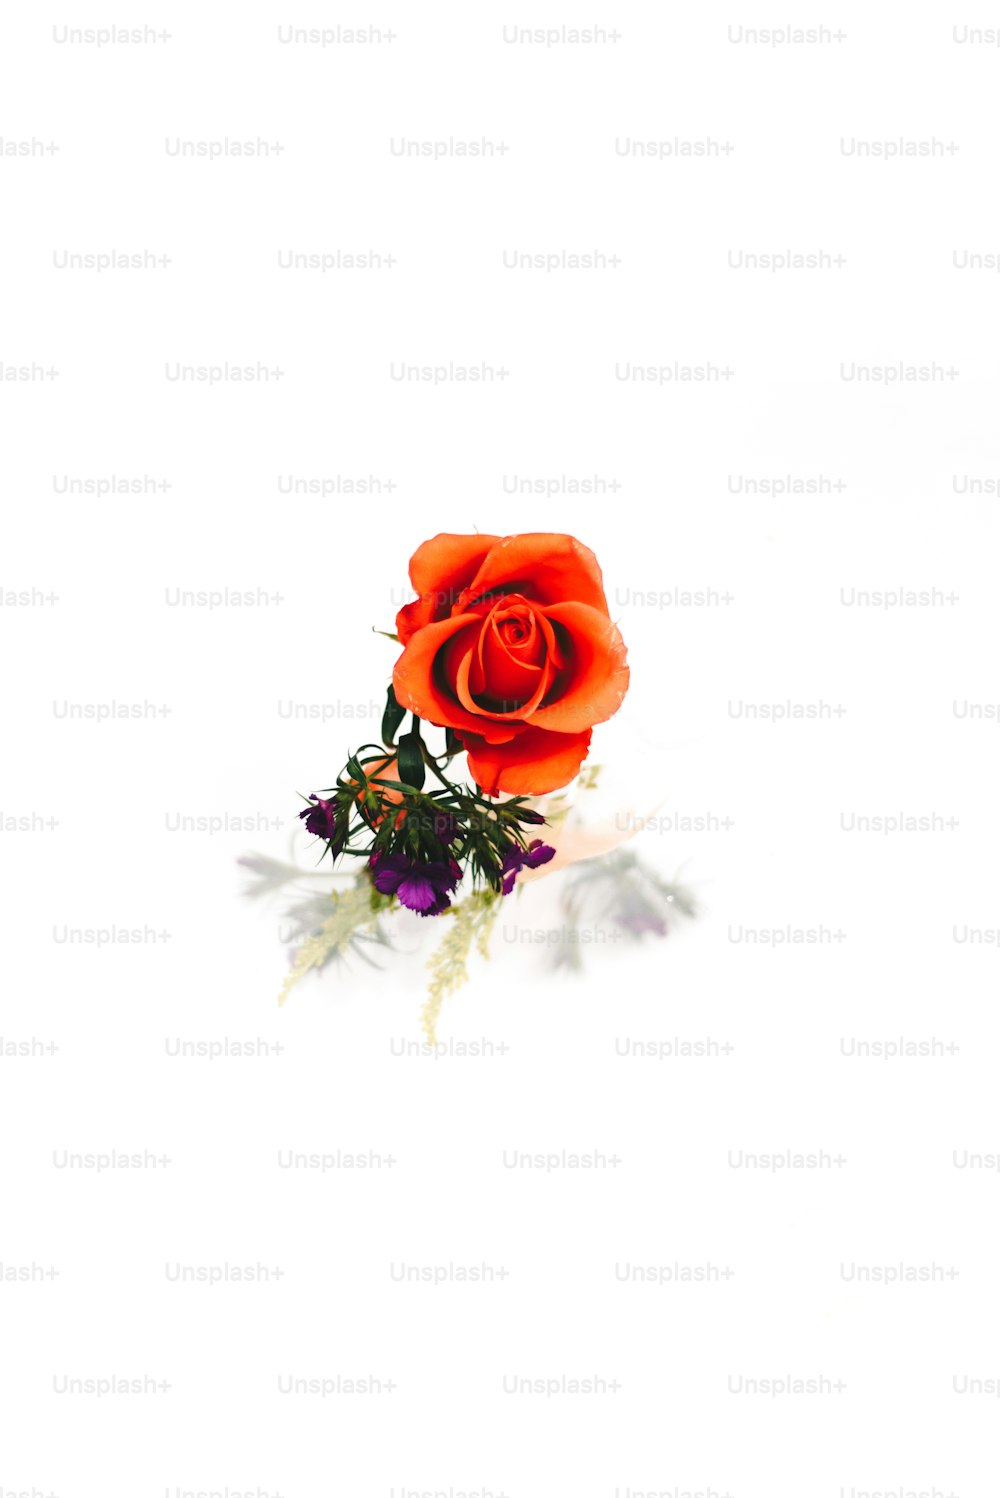 Eine einzelne rote Rose ist auf weißem Hintergrund dargestellt